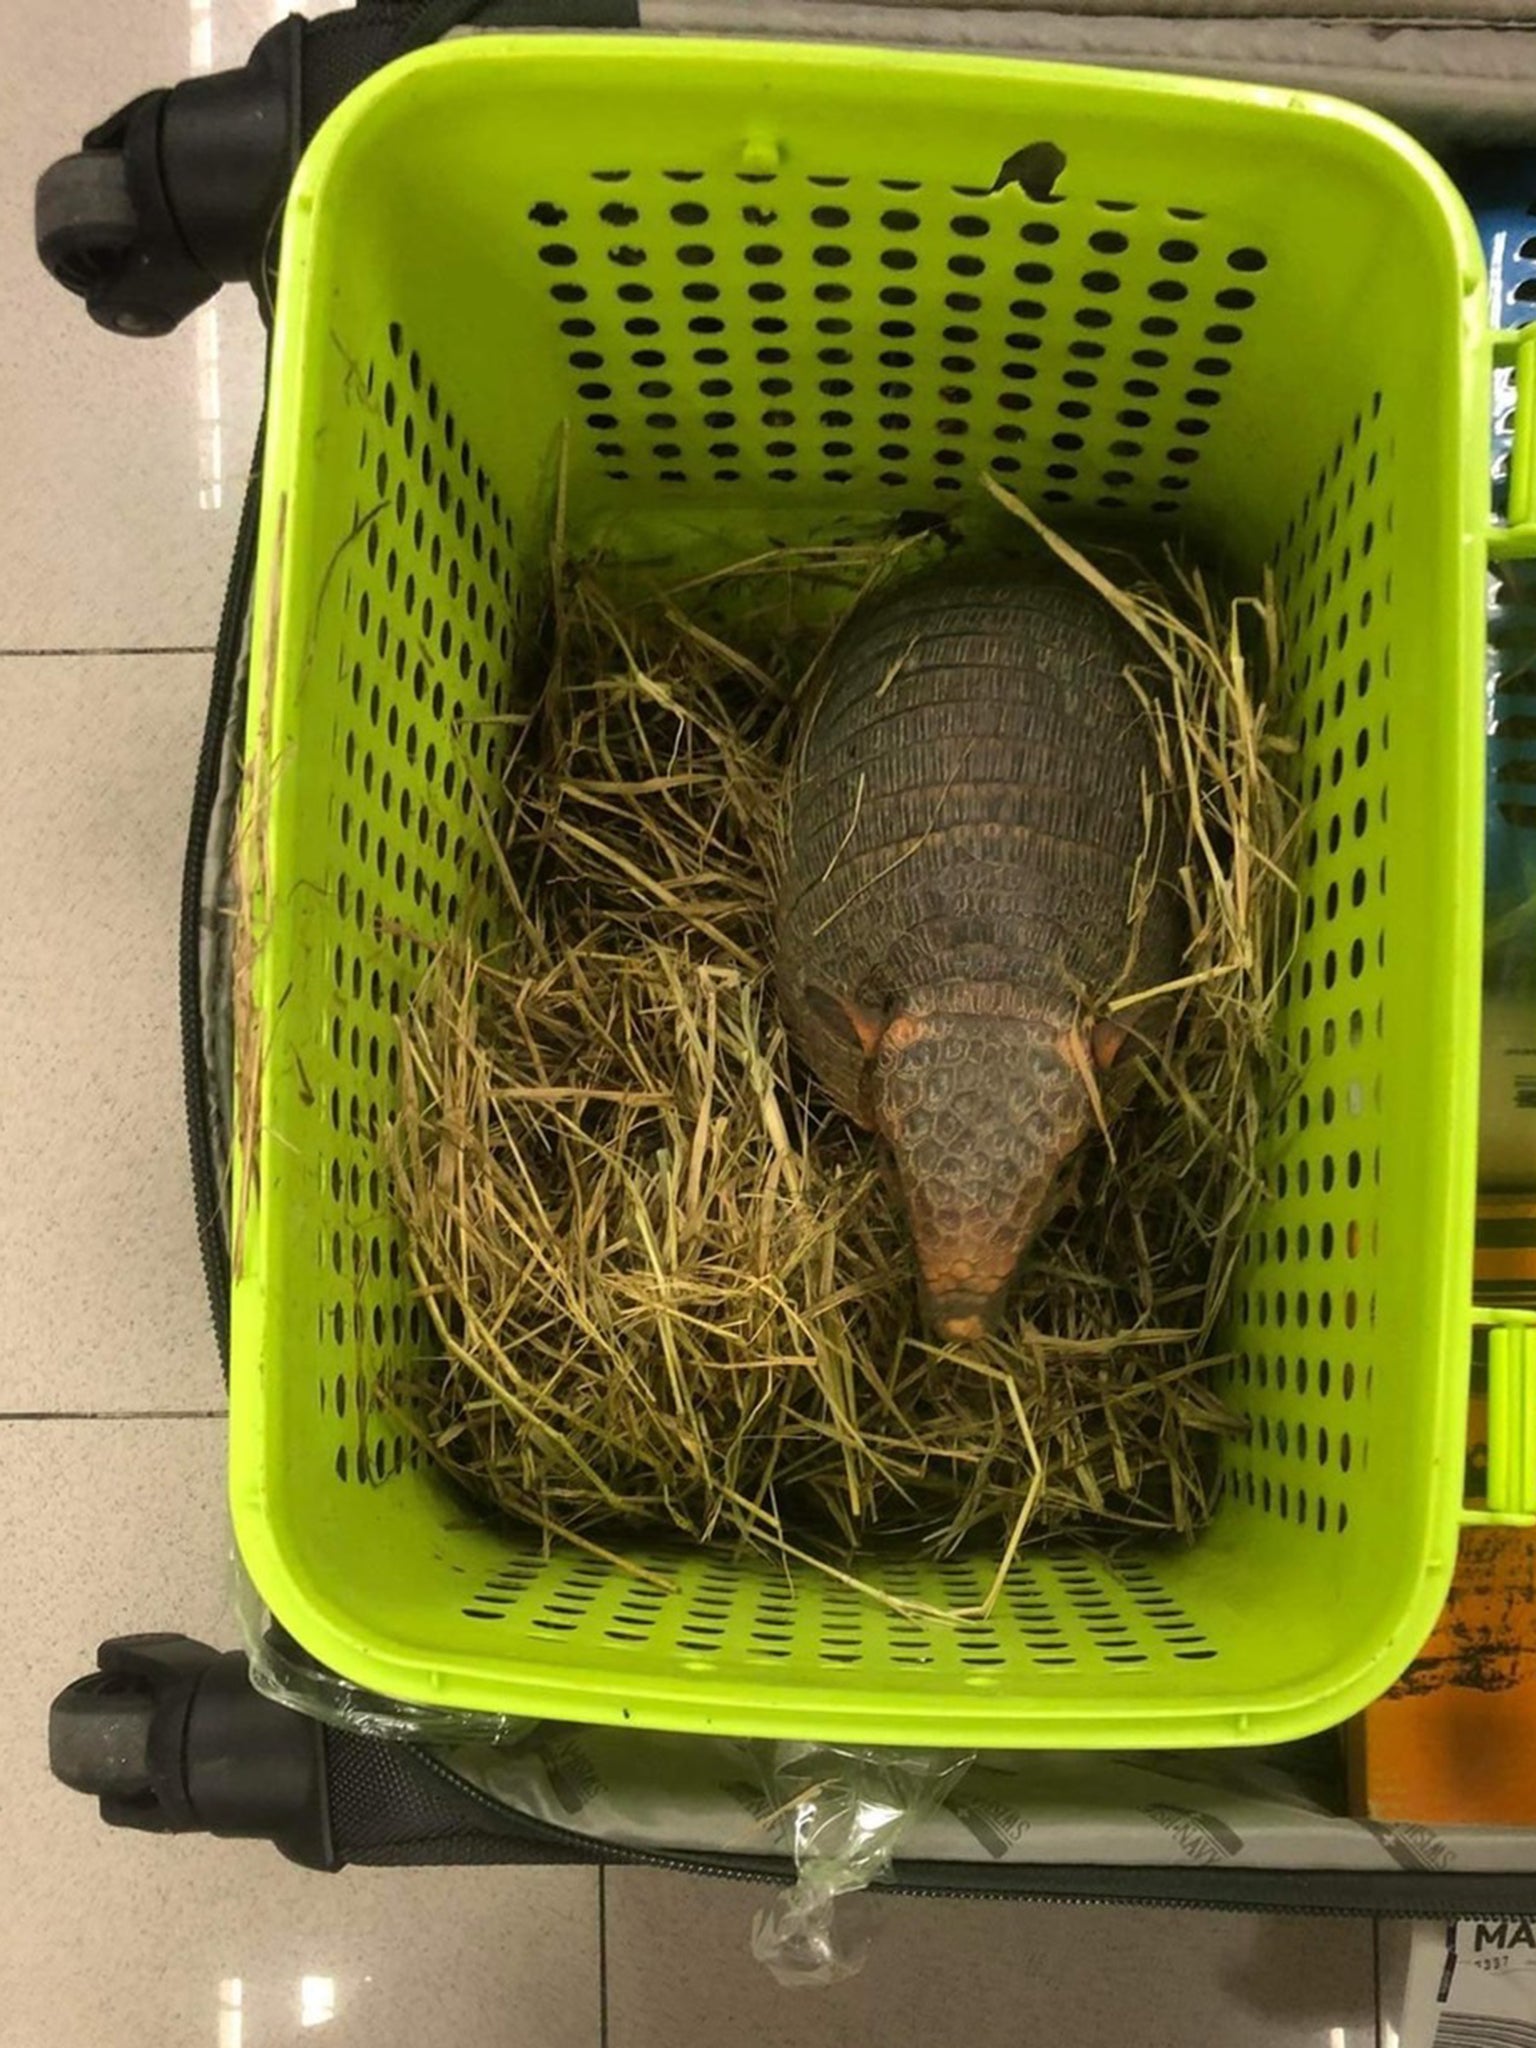 Second armadillo seized at Bangkok airport